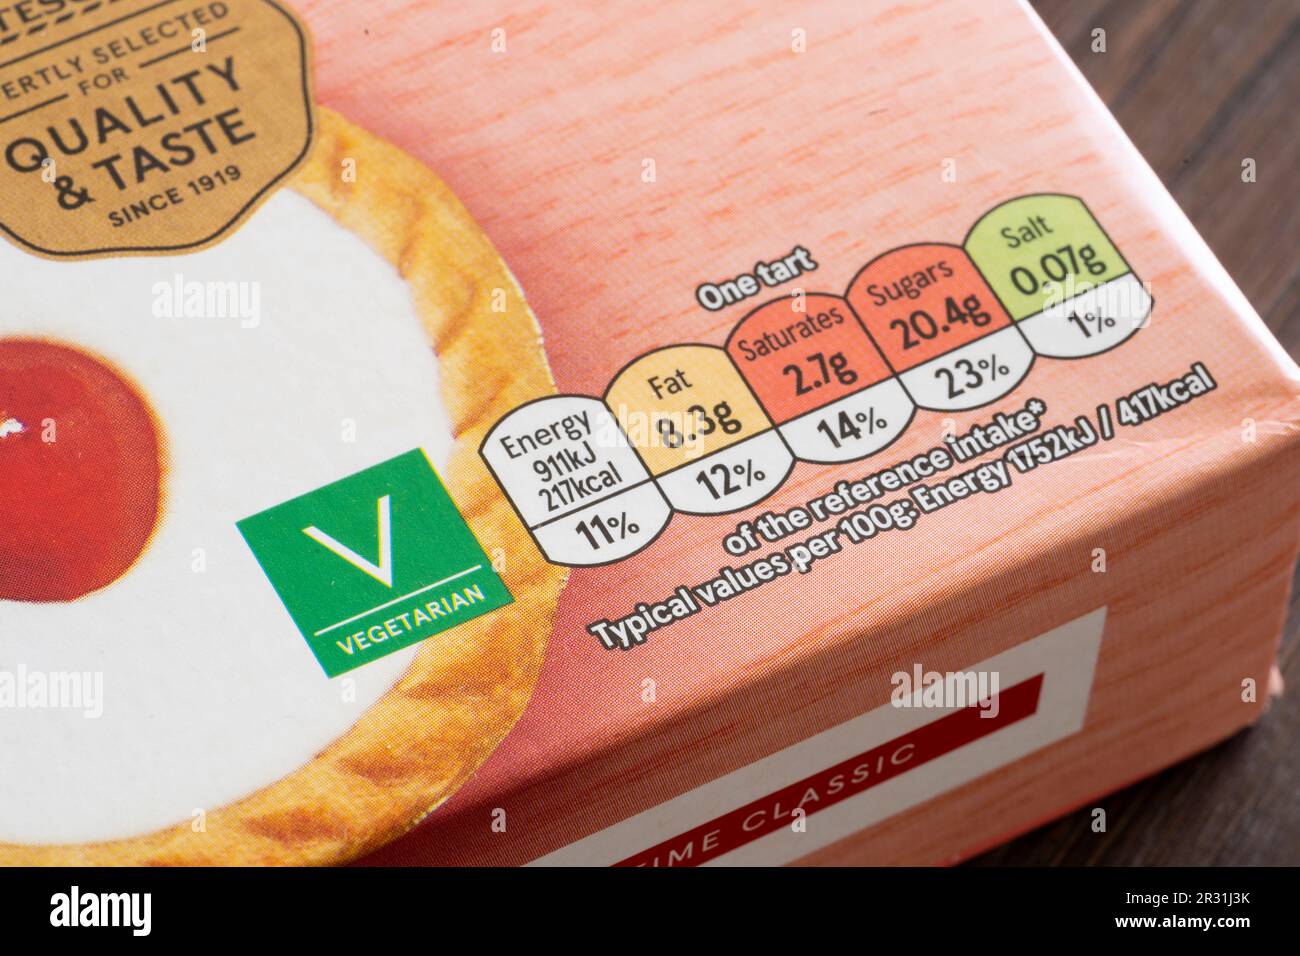 Parte anteriore della confezione nutrizionale alimentare e vegetariana etichetta su Tesco marchio di fabbrica bakewell Crostate, Inghilterra. Concetto: Contenuto nutrizionale di zucchero di labelingm Foto Stock